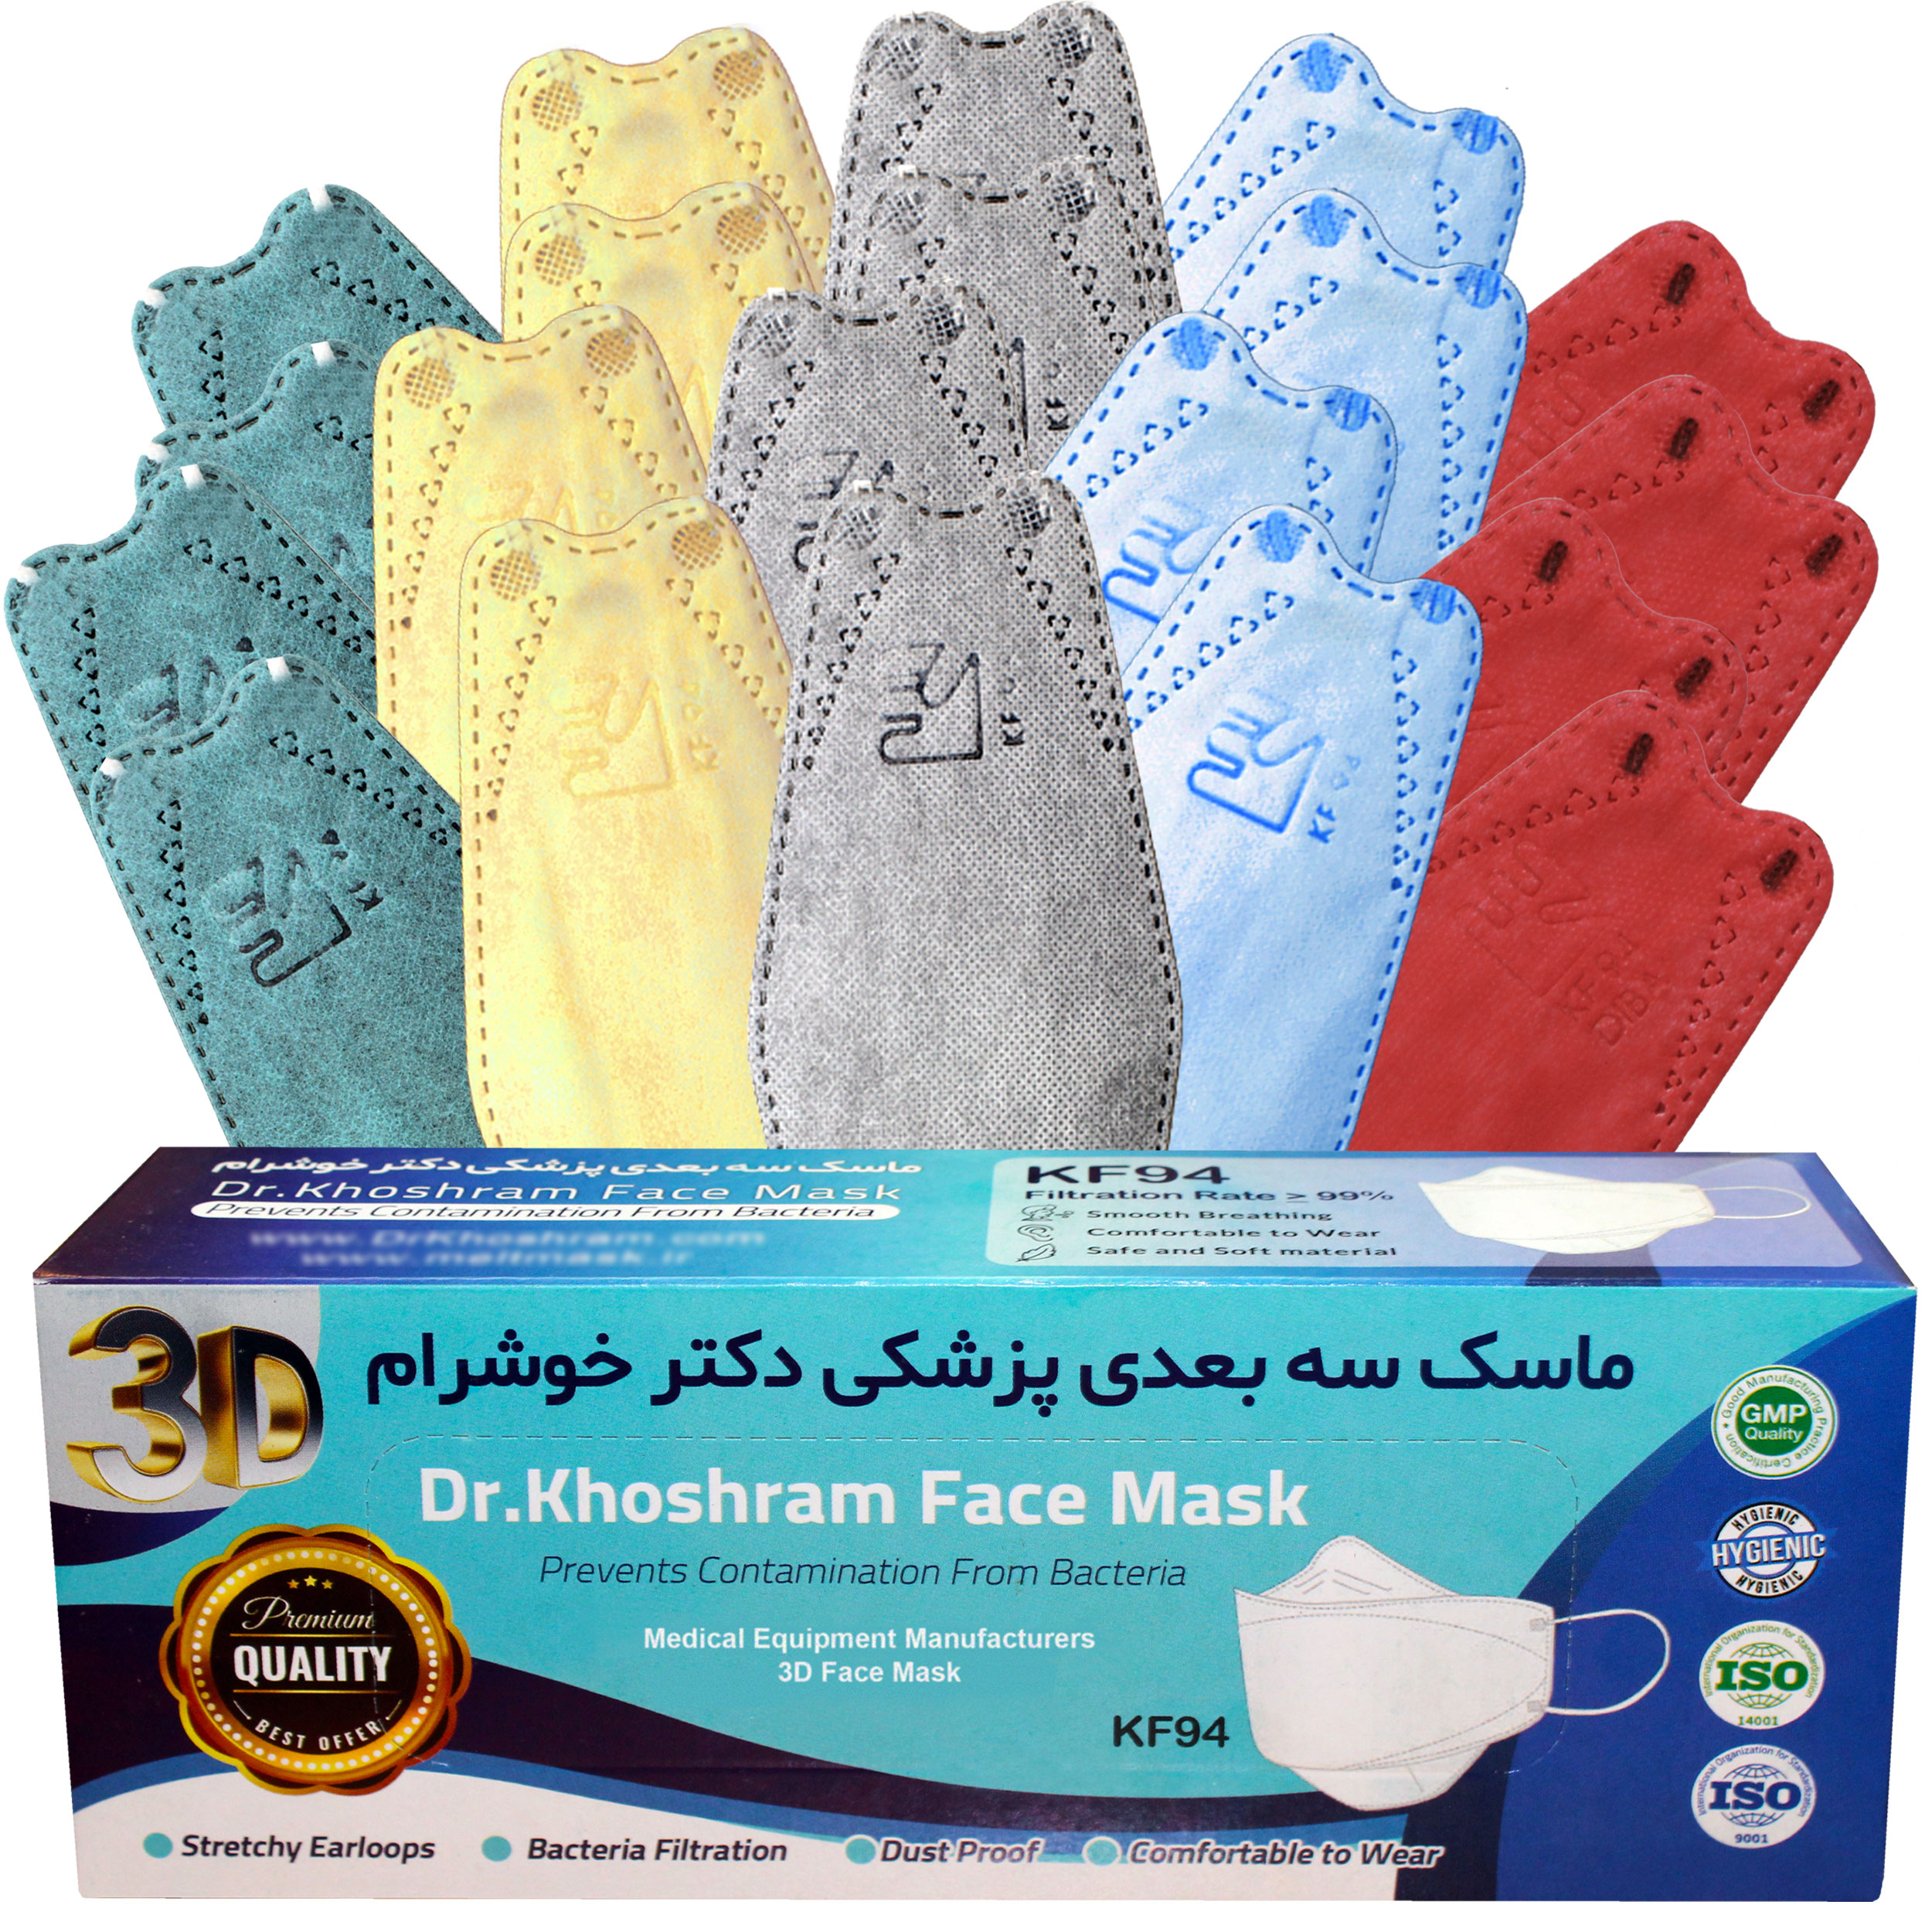 ماسک تنفسی دکتر خوش رام مدل رنگبندی 1401 بسته 20 عددی